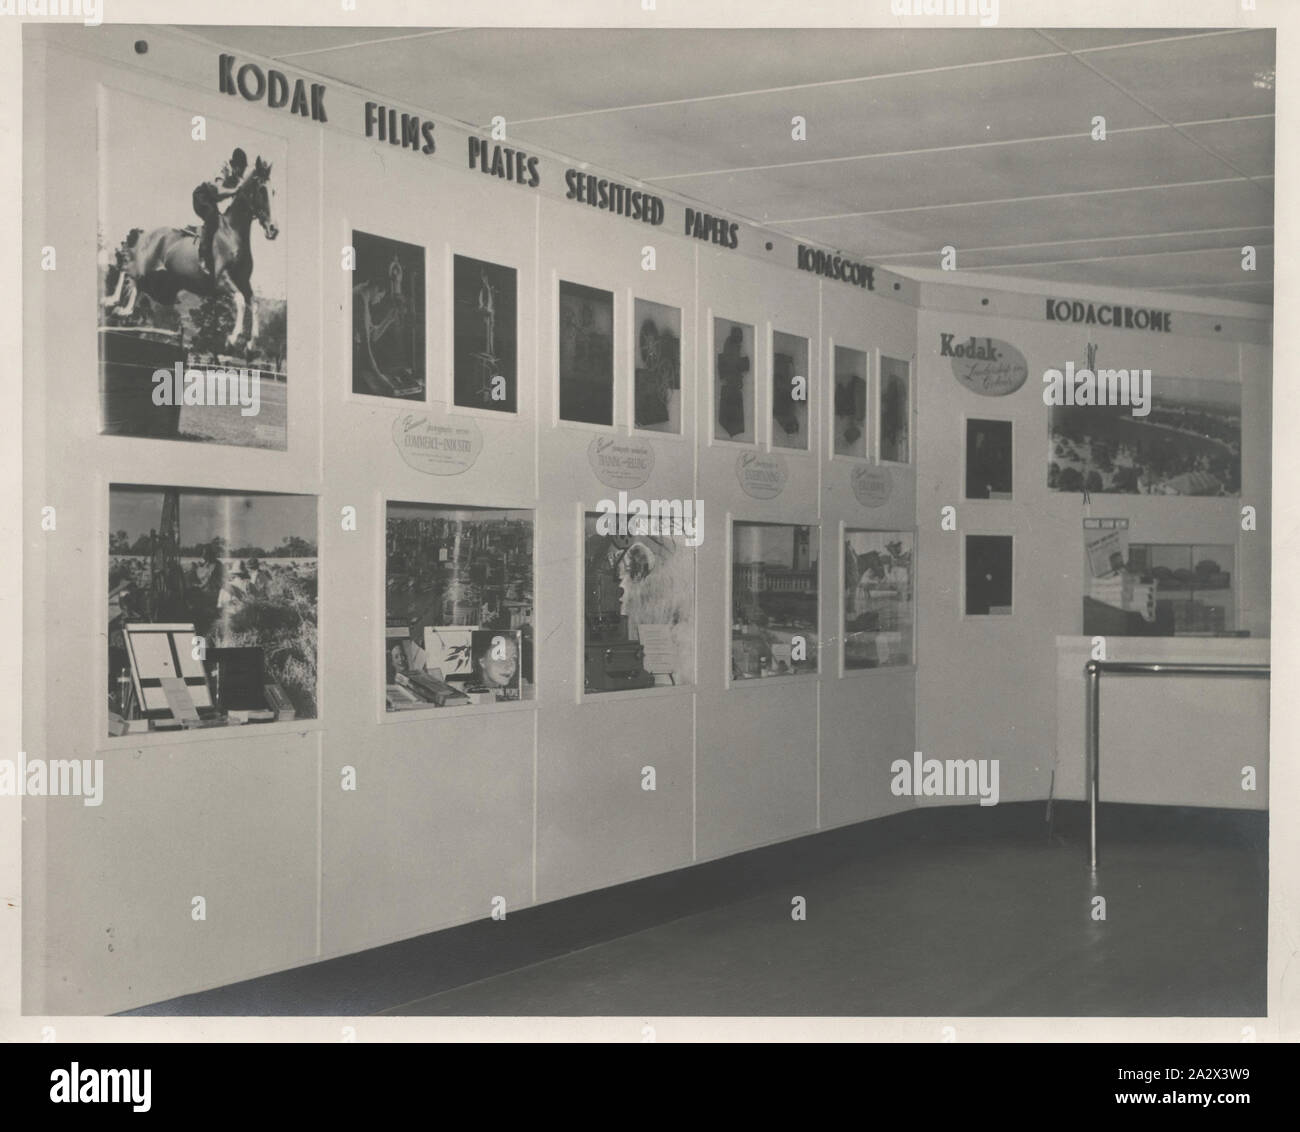 Winneconne, WI - 11 De Noviembre De 2018: Una Cámara Desechable Kodak Con  Película Kodak De 35 Mm En El Interior Sobre Un Fondo Aislado. Fotos,  retratos, imágenes y fotografía de archivo